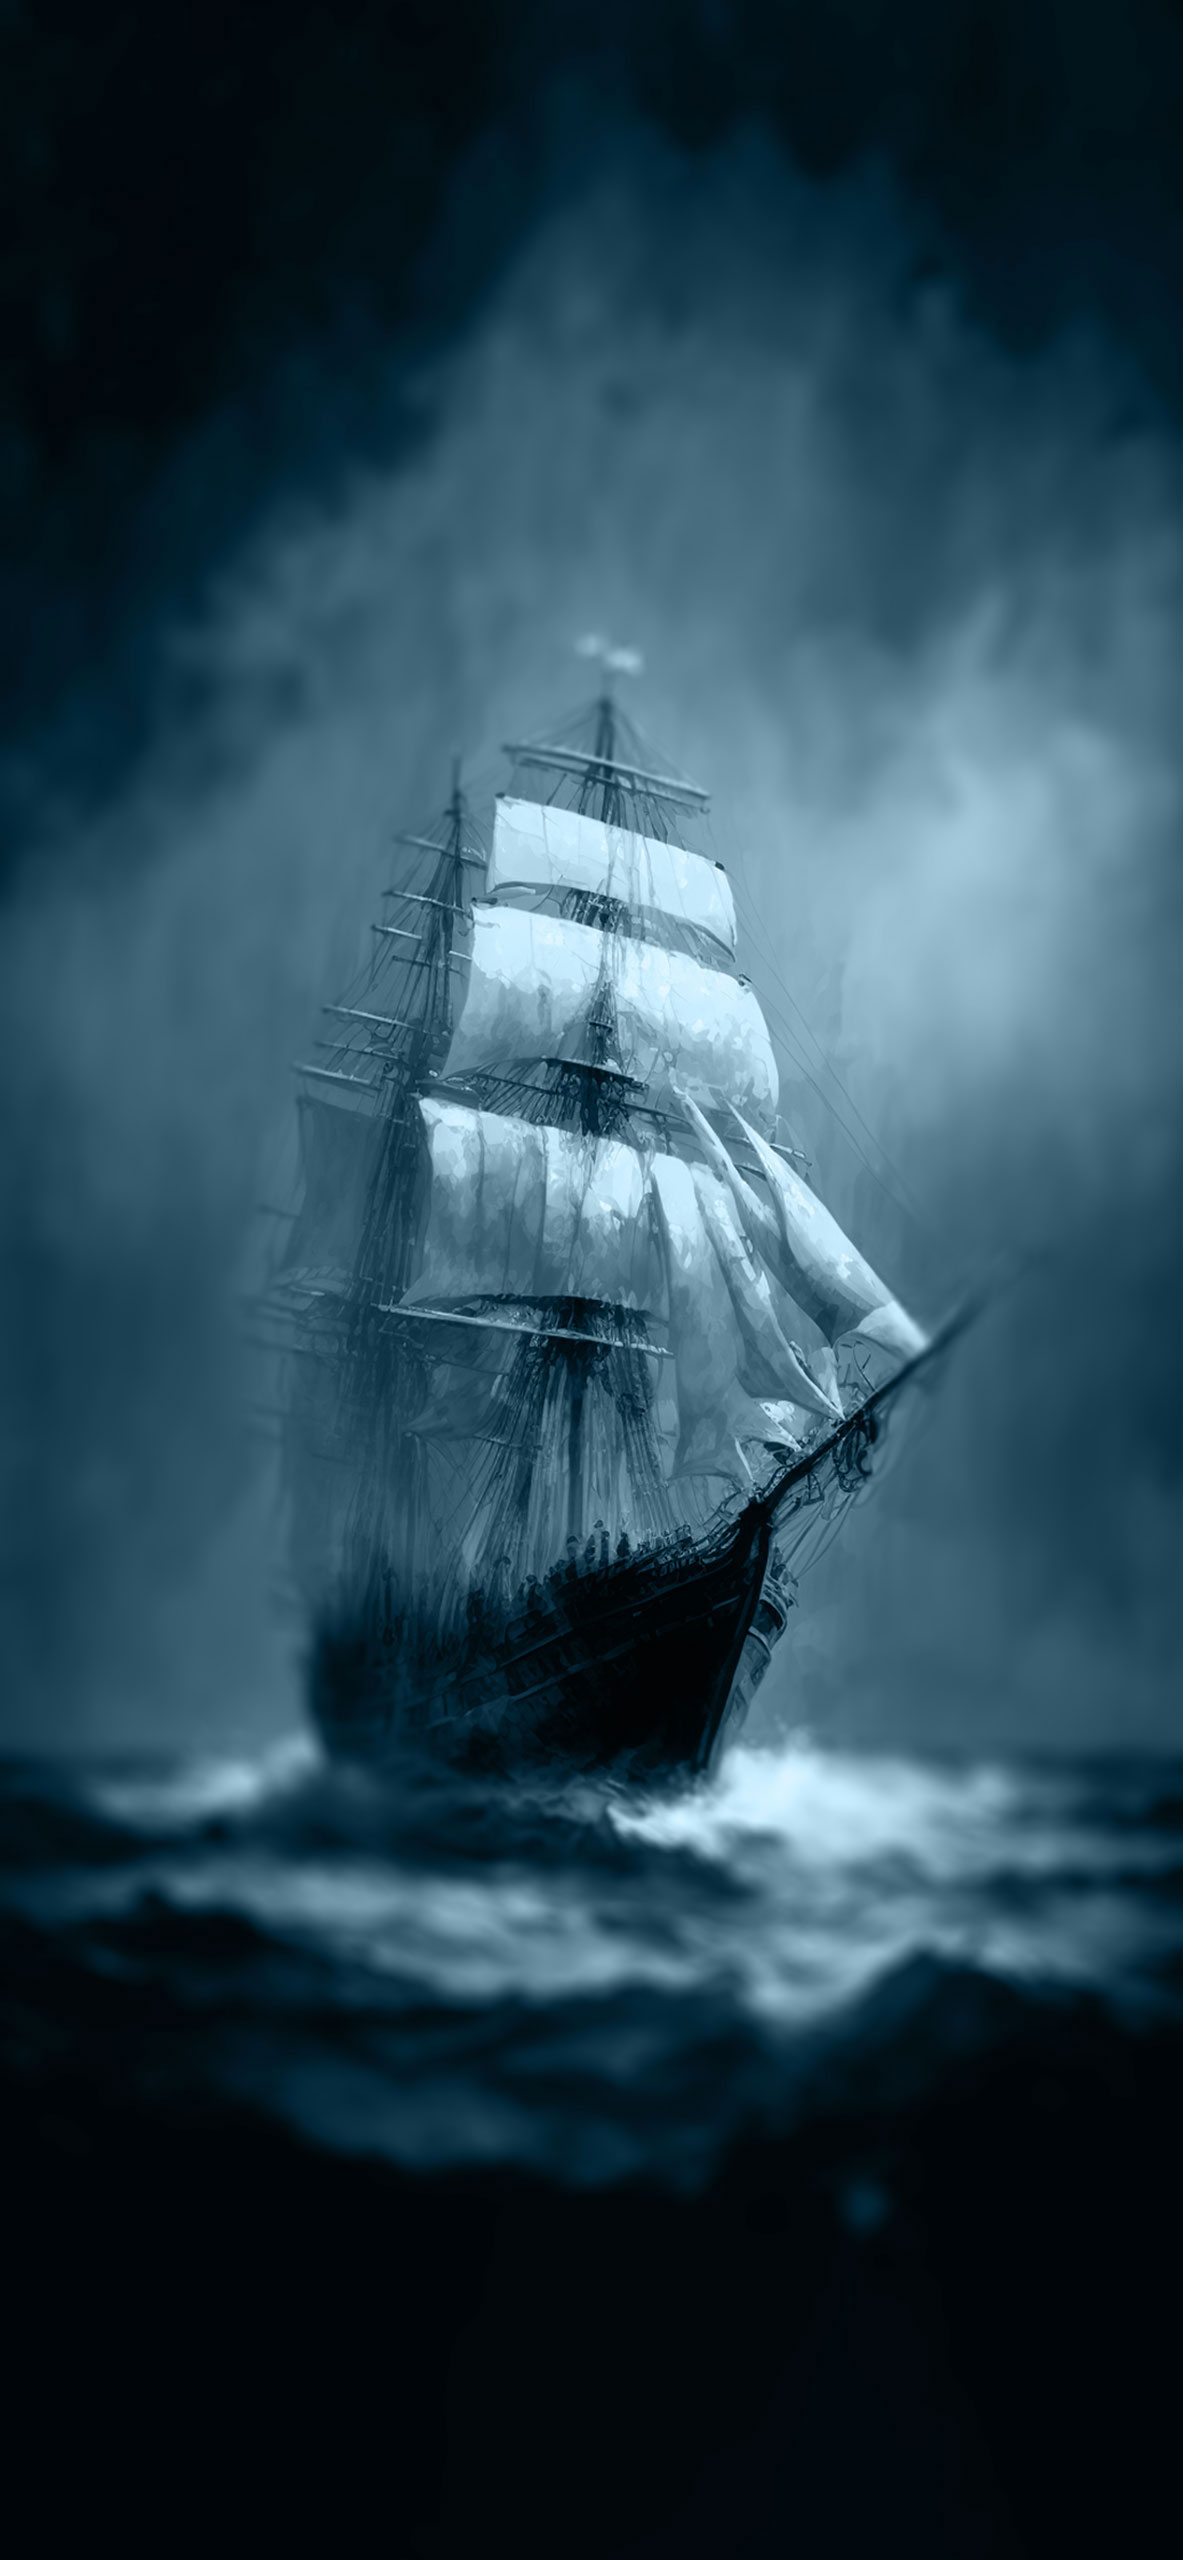 sailing ship at sea background